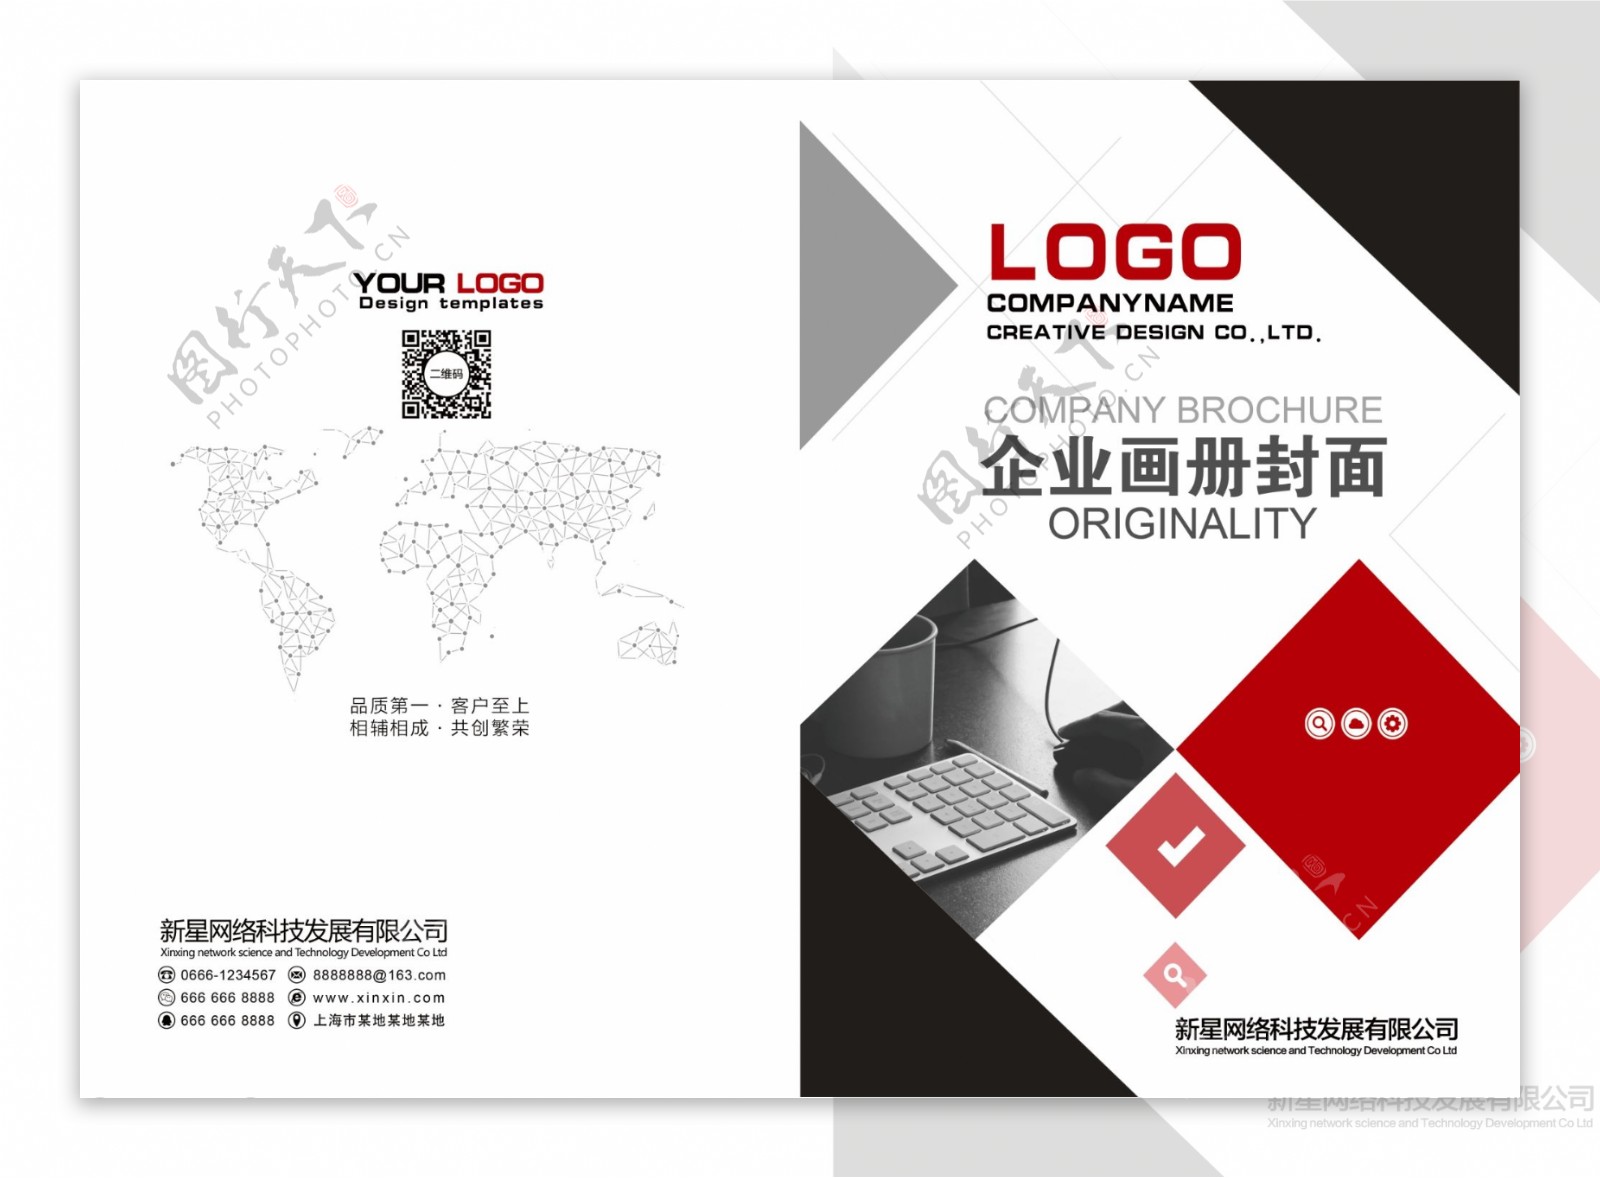 企业产品宣传画册封面设计